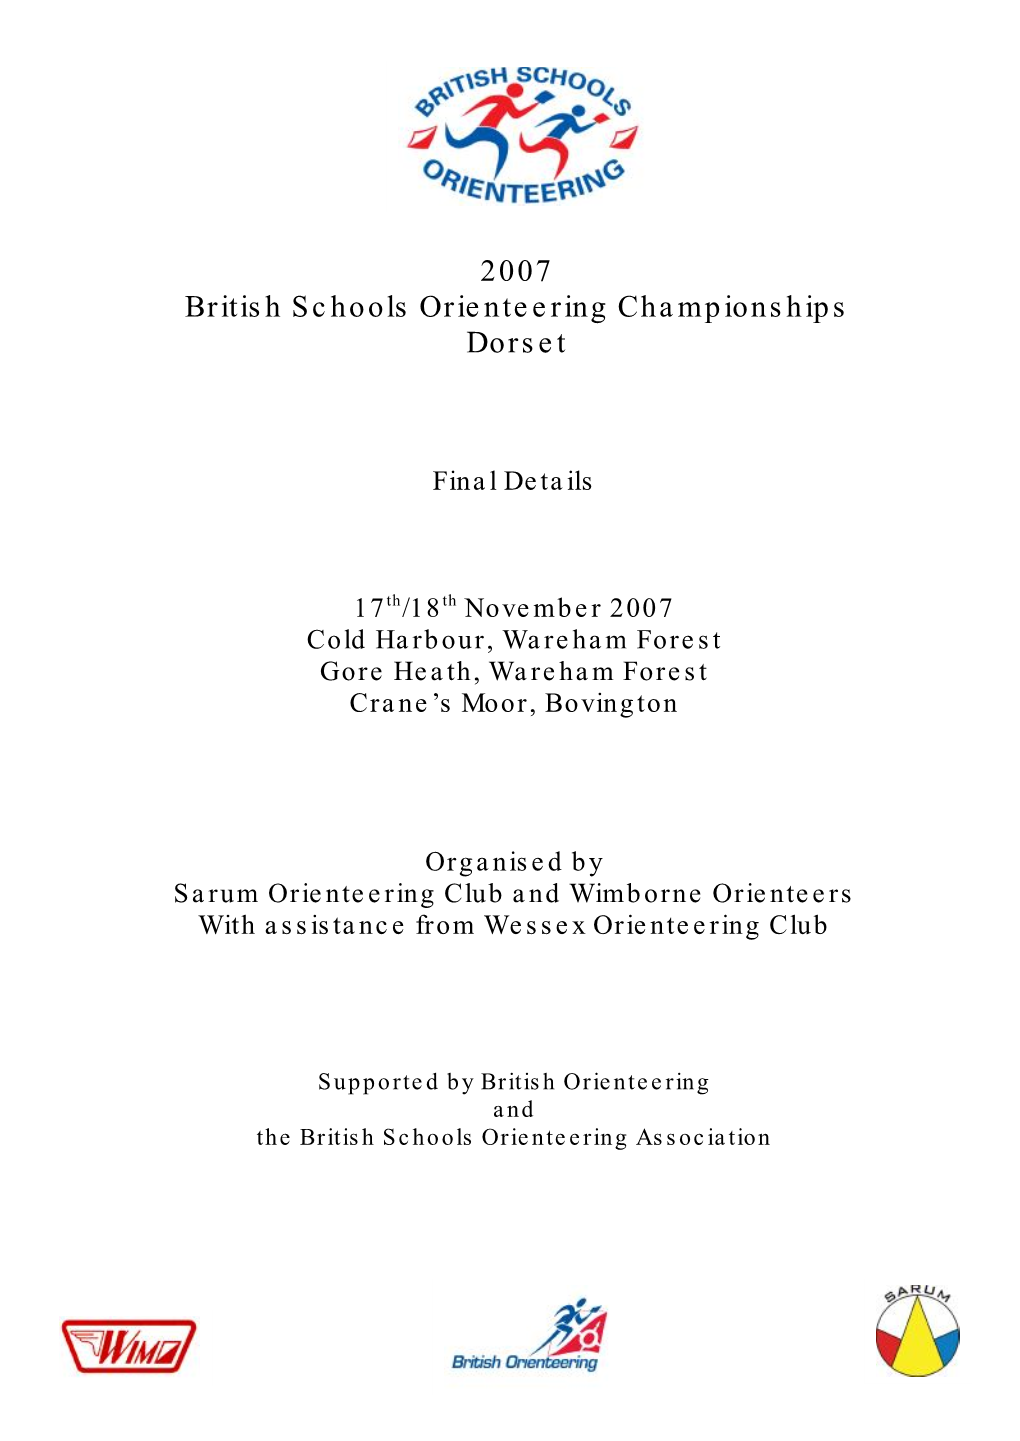 2007 British Schools Orienteering Championships Dorset